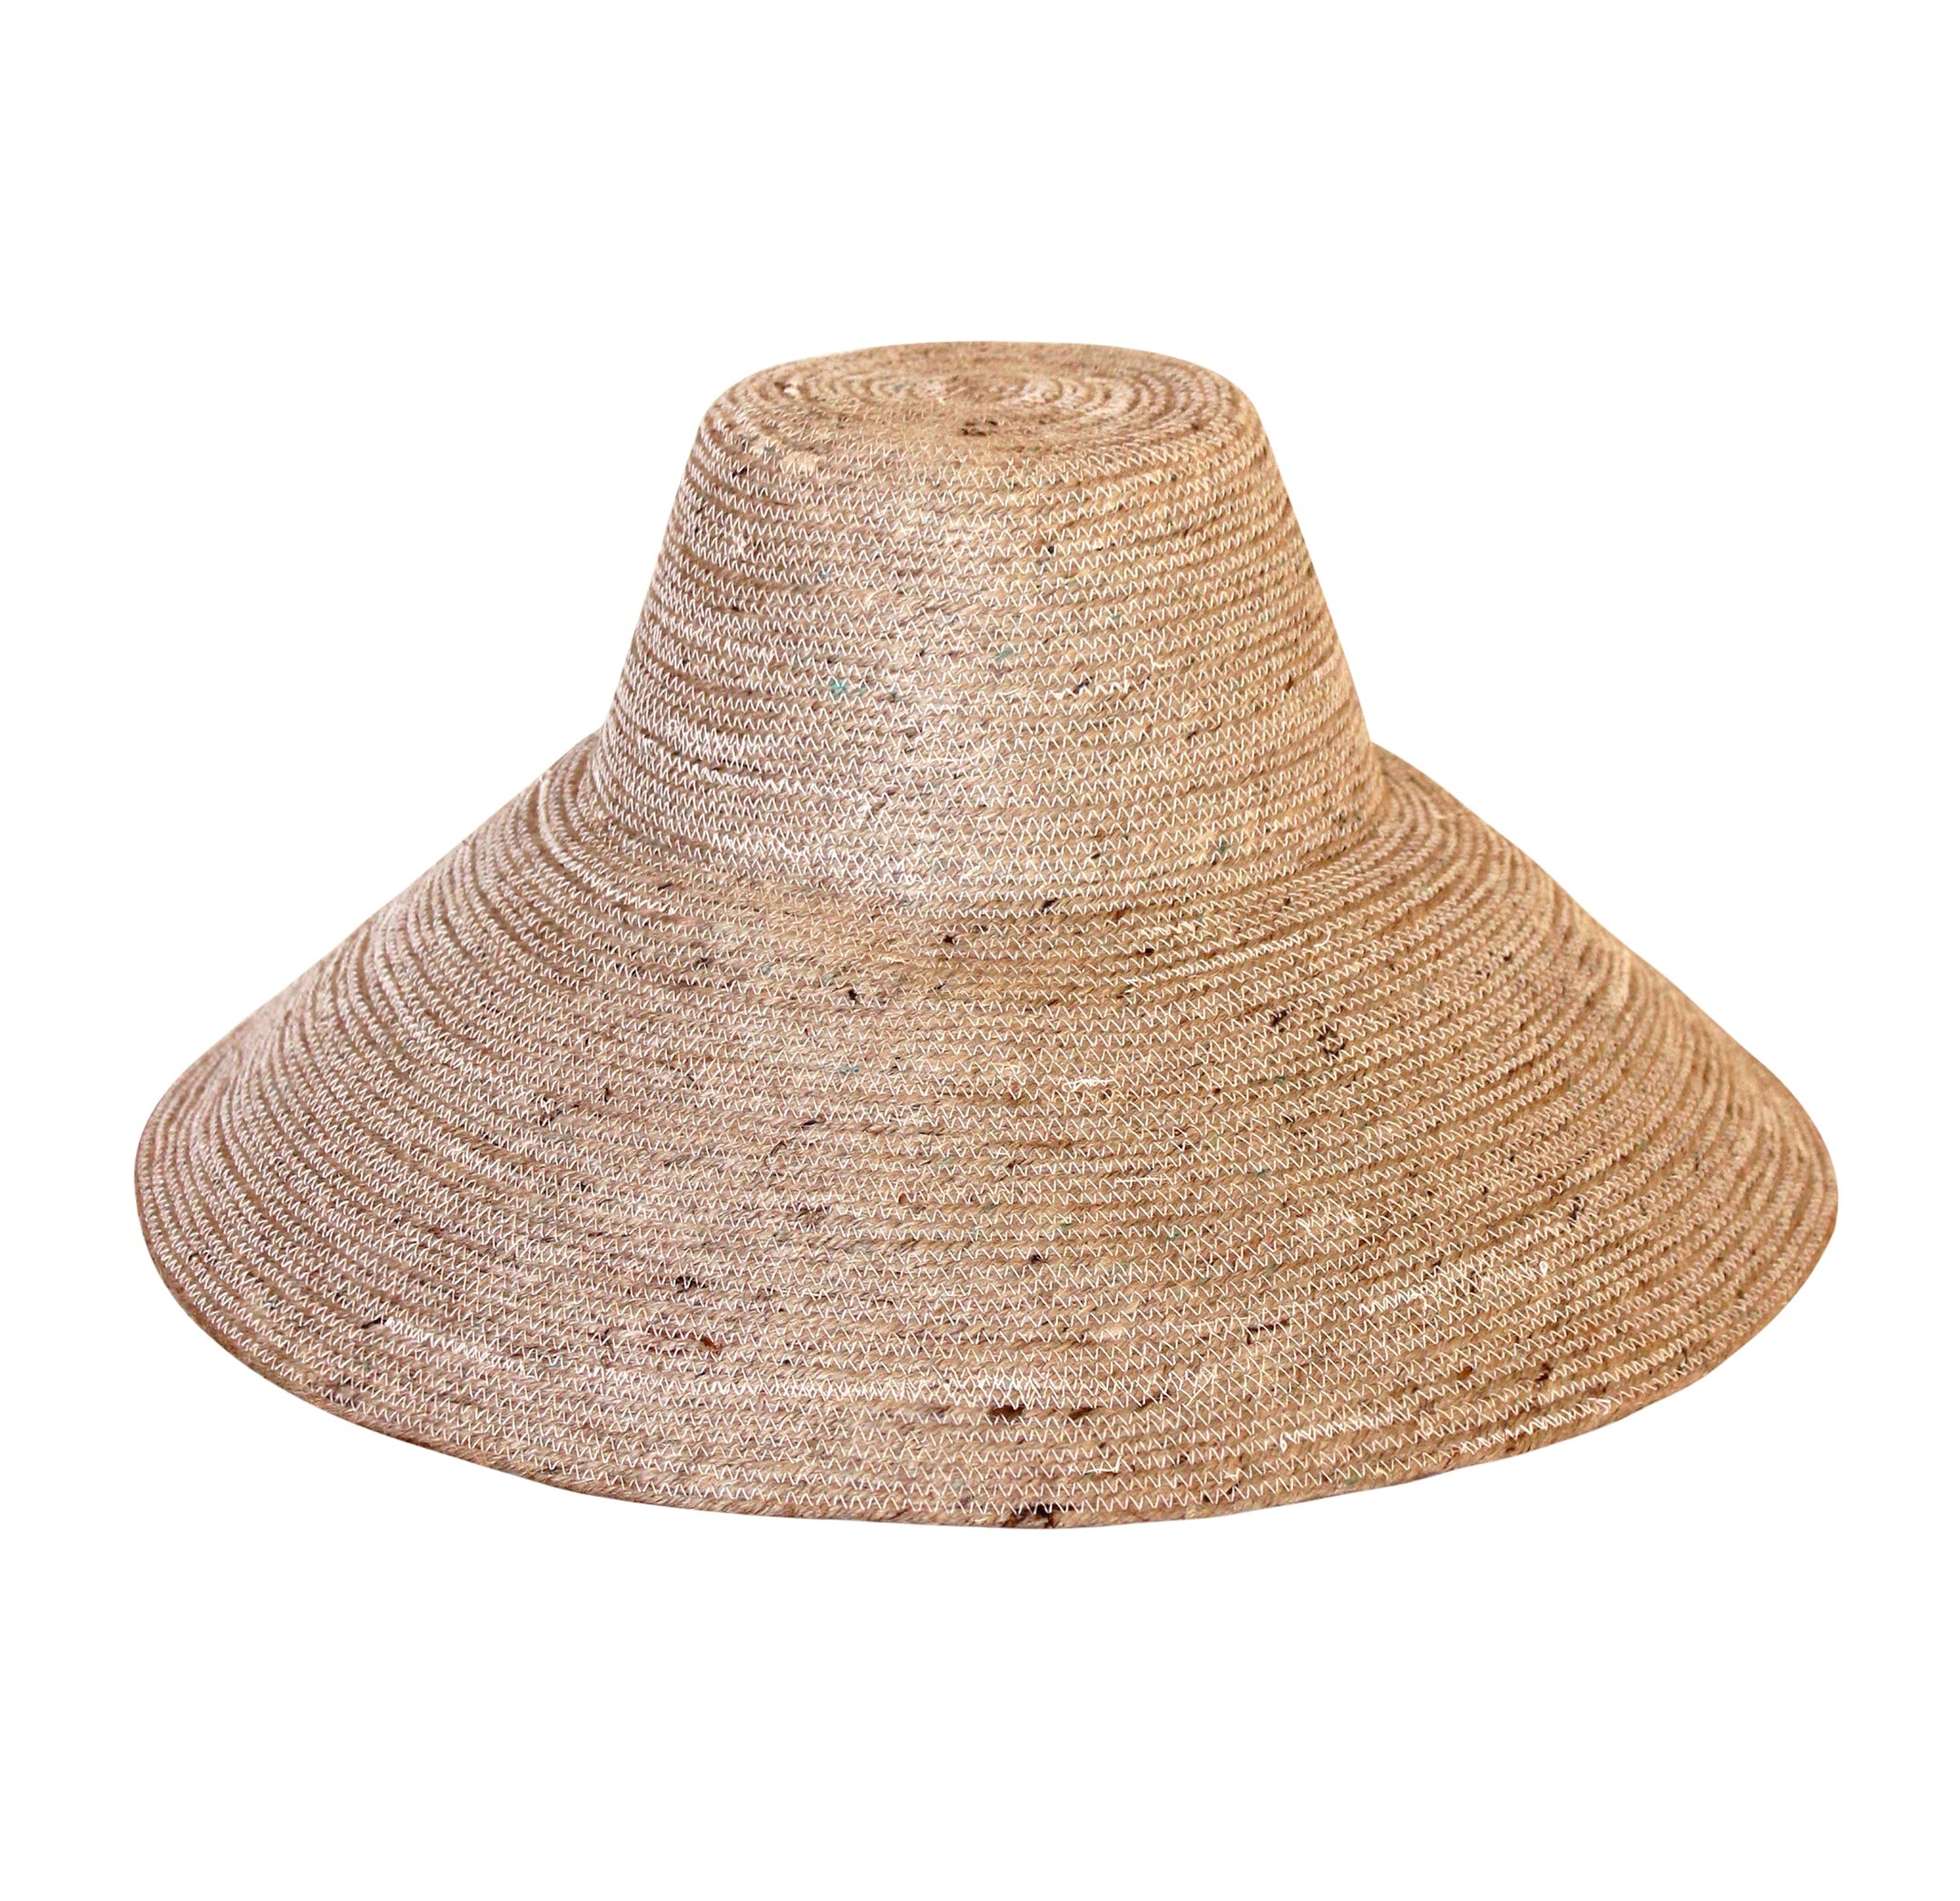 Buy RIRI Jute Straw Hat, in Nude Beige by BrunnaCo